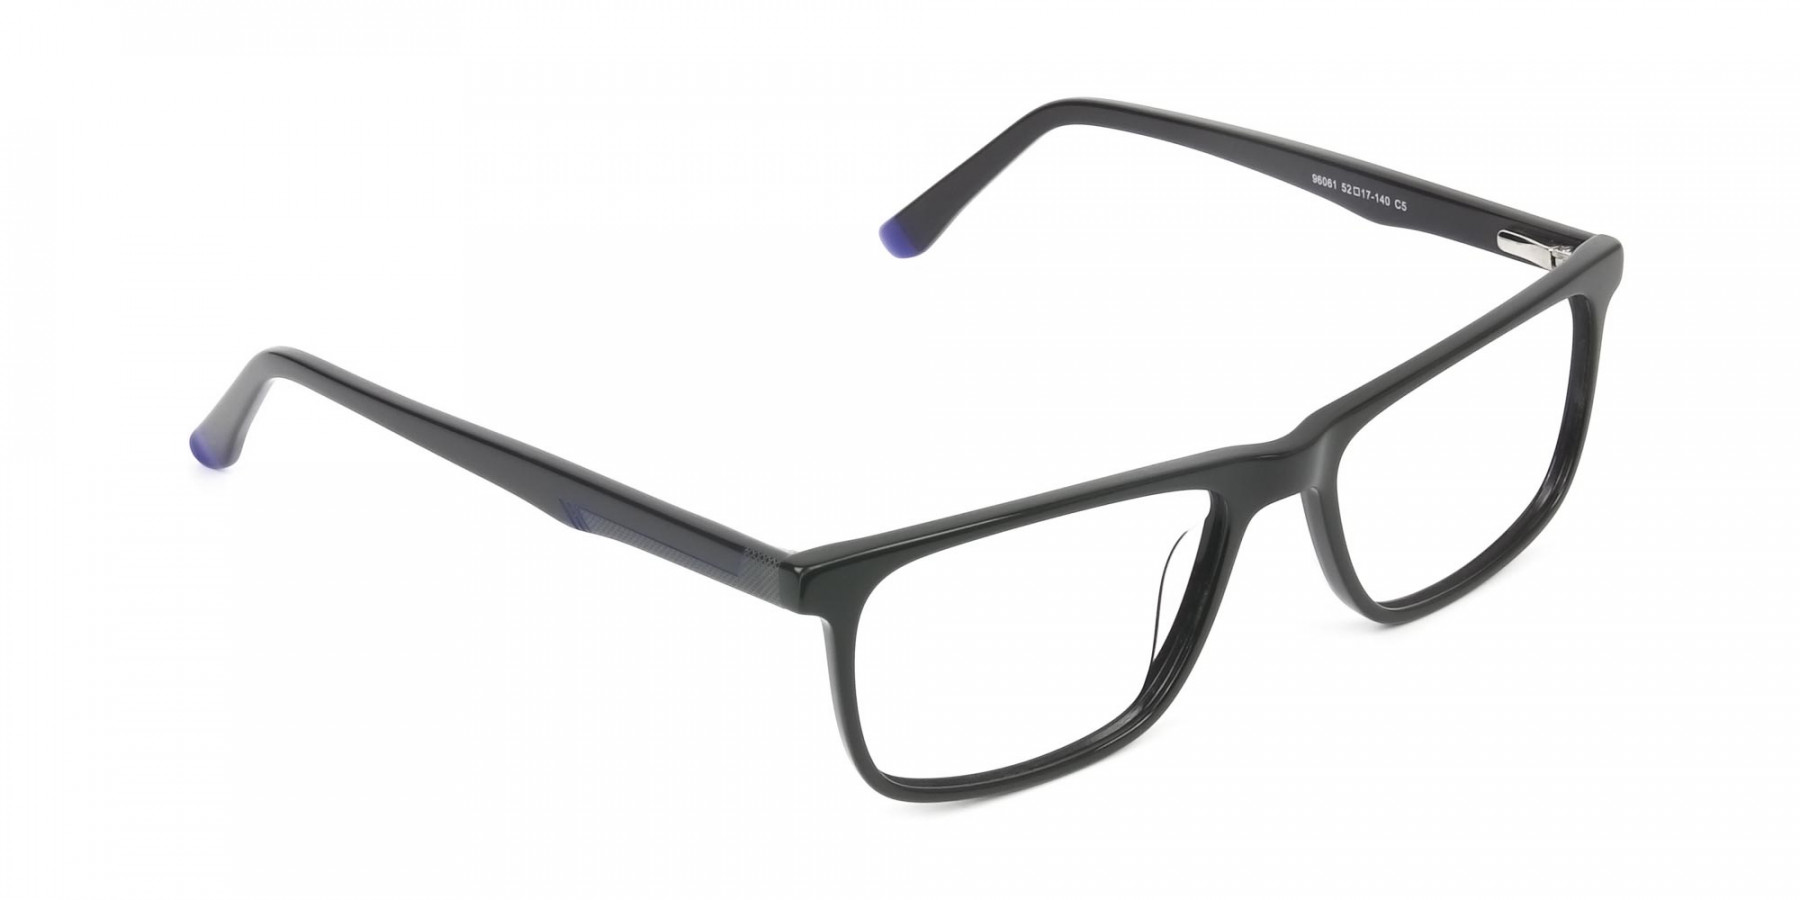 Black & Blue Temple Tips Glasses in Rectangular - 1